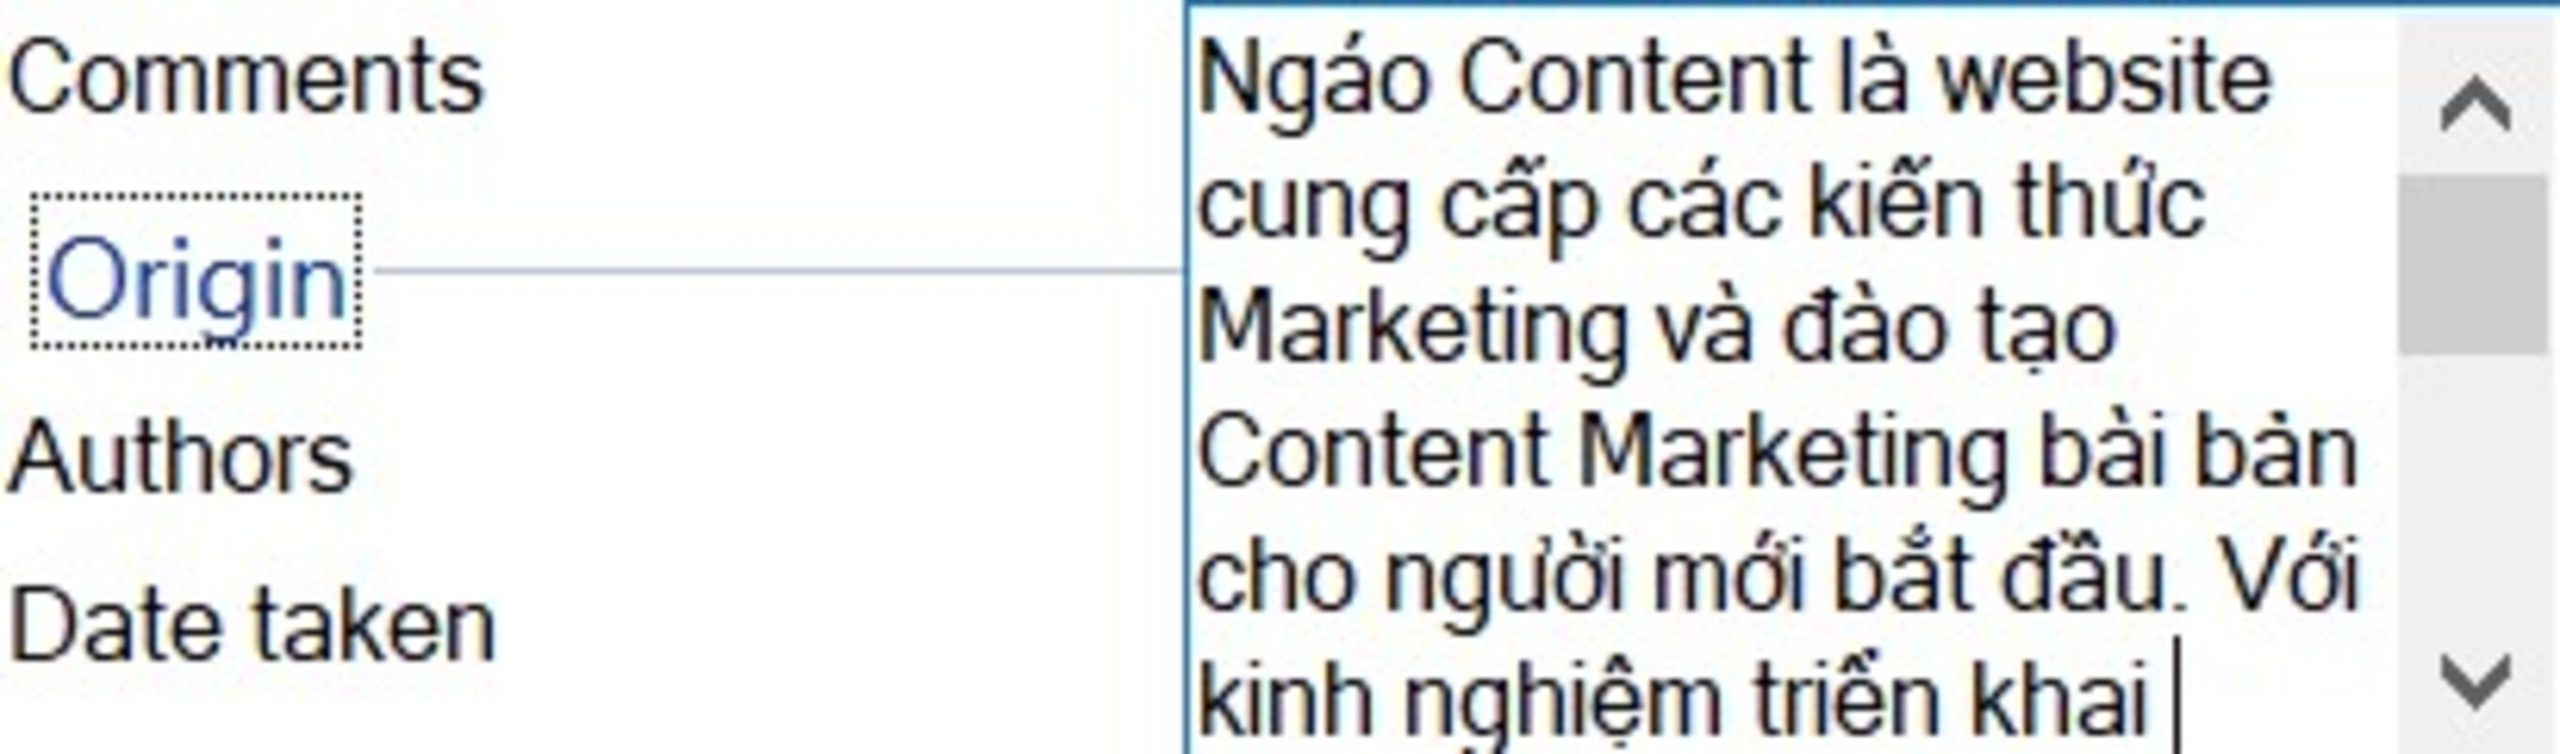 Ví dụ: Ngáo Content là website cung cấp các kiến thức Marketing và đào tạo Content Marketing bài bản cho người mới bắt đầu. 